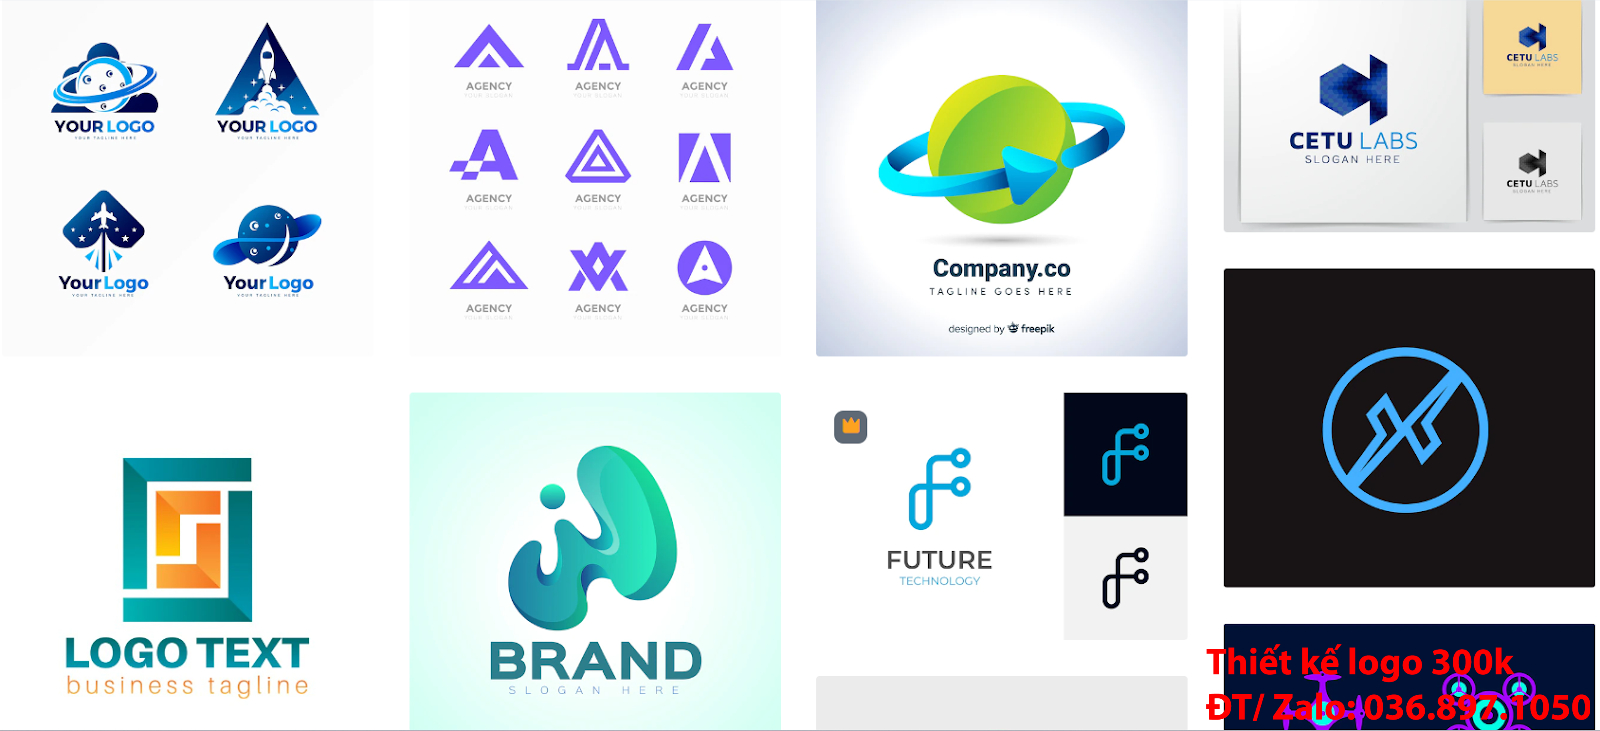 Nhận tạo Mẫu logo công ty công nghệ đẹp miễn phí online cho các công ty tại khu vực TpHCM chuyên nghiệp uy tín nhất